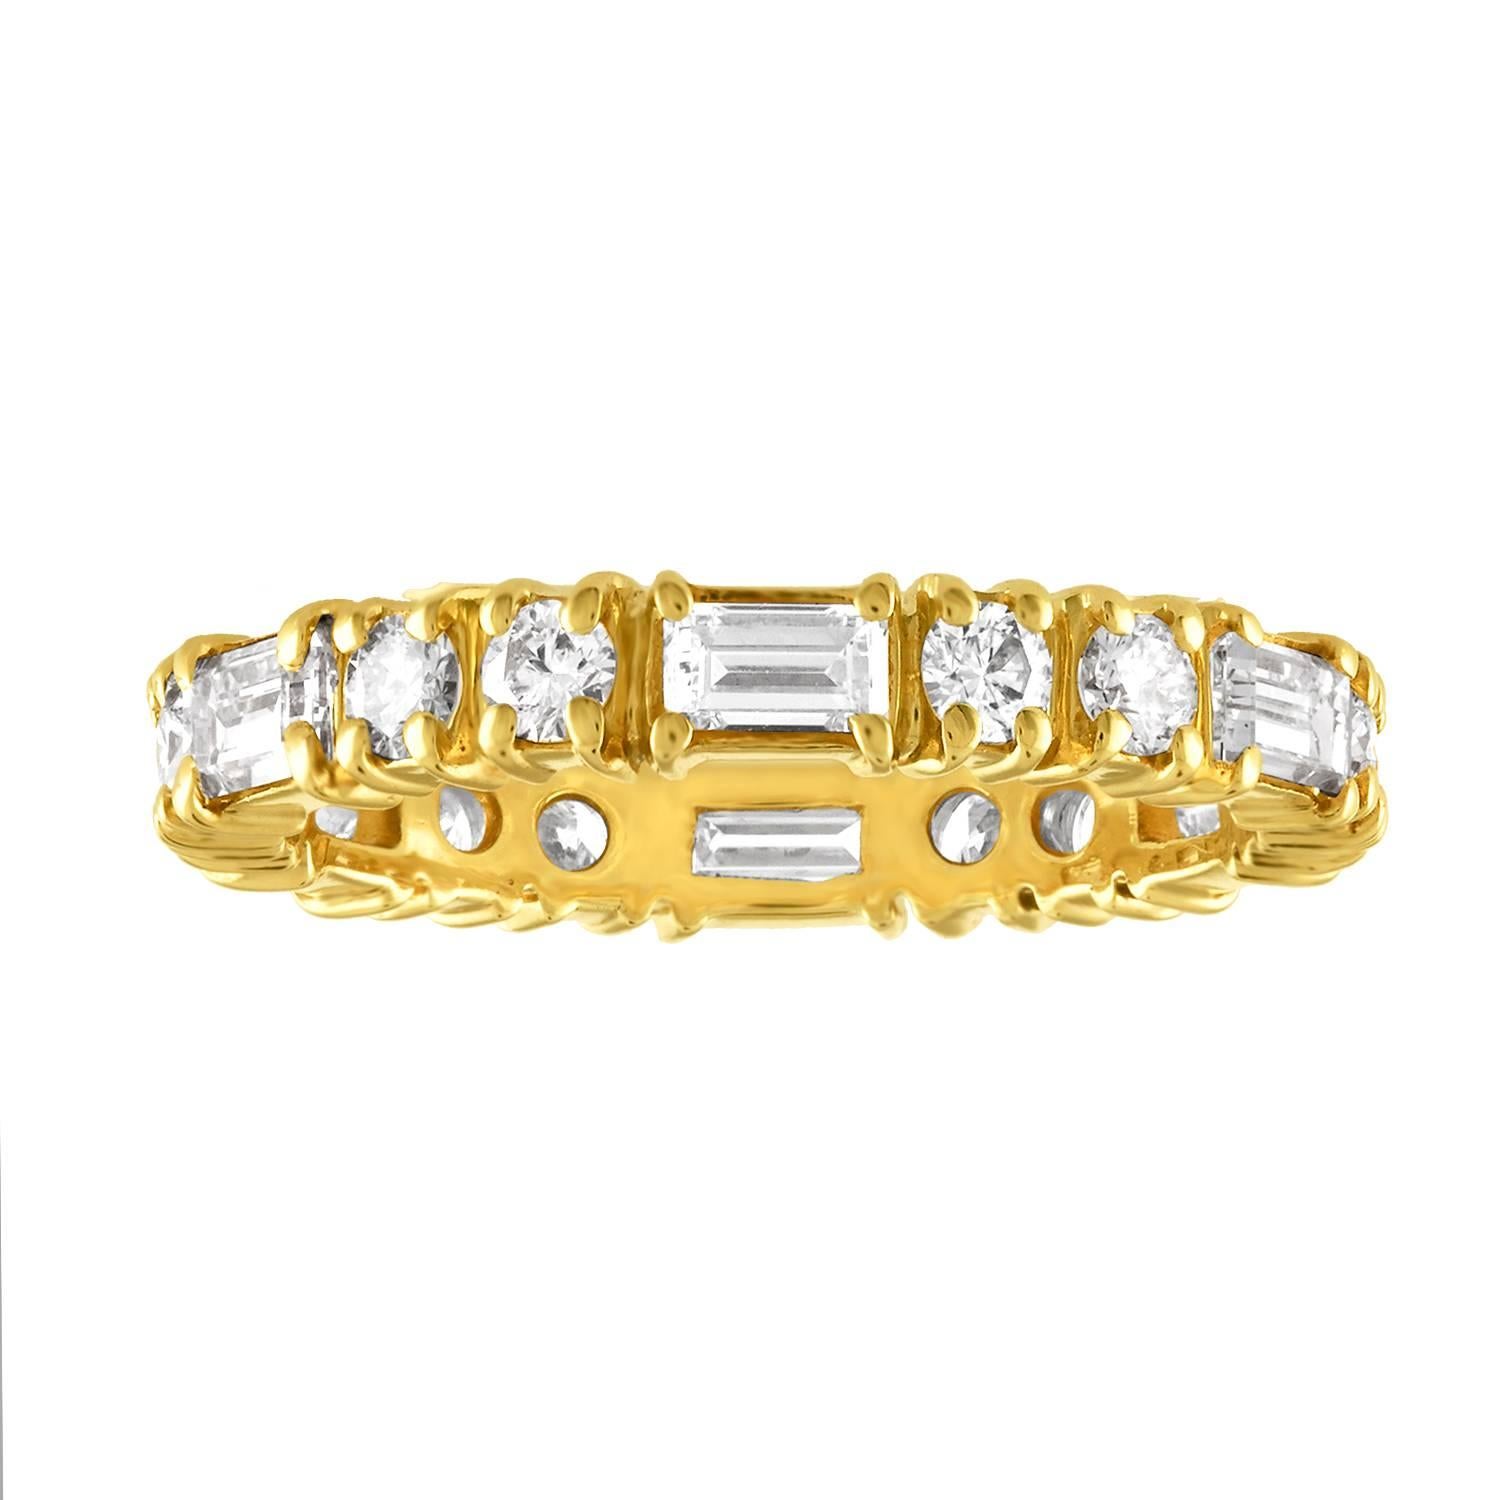 Wunderschönes Ewiges Band mit abwechselnd runden und Baguette-Diamanten
Der Ring ist aus 18KY Gold.
Es gibt 1,50 Karat in Diamanten F/G VS
Der Ring wiegt 3,1 Gramm
Der Ring ist eine Größe 5,75, kann nicht angepasst werden.